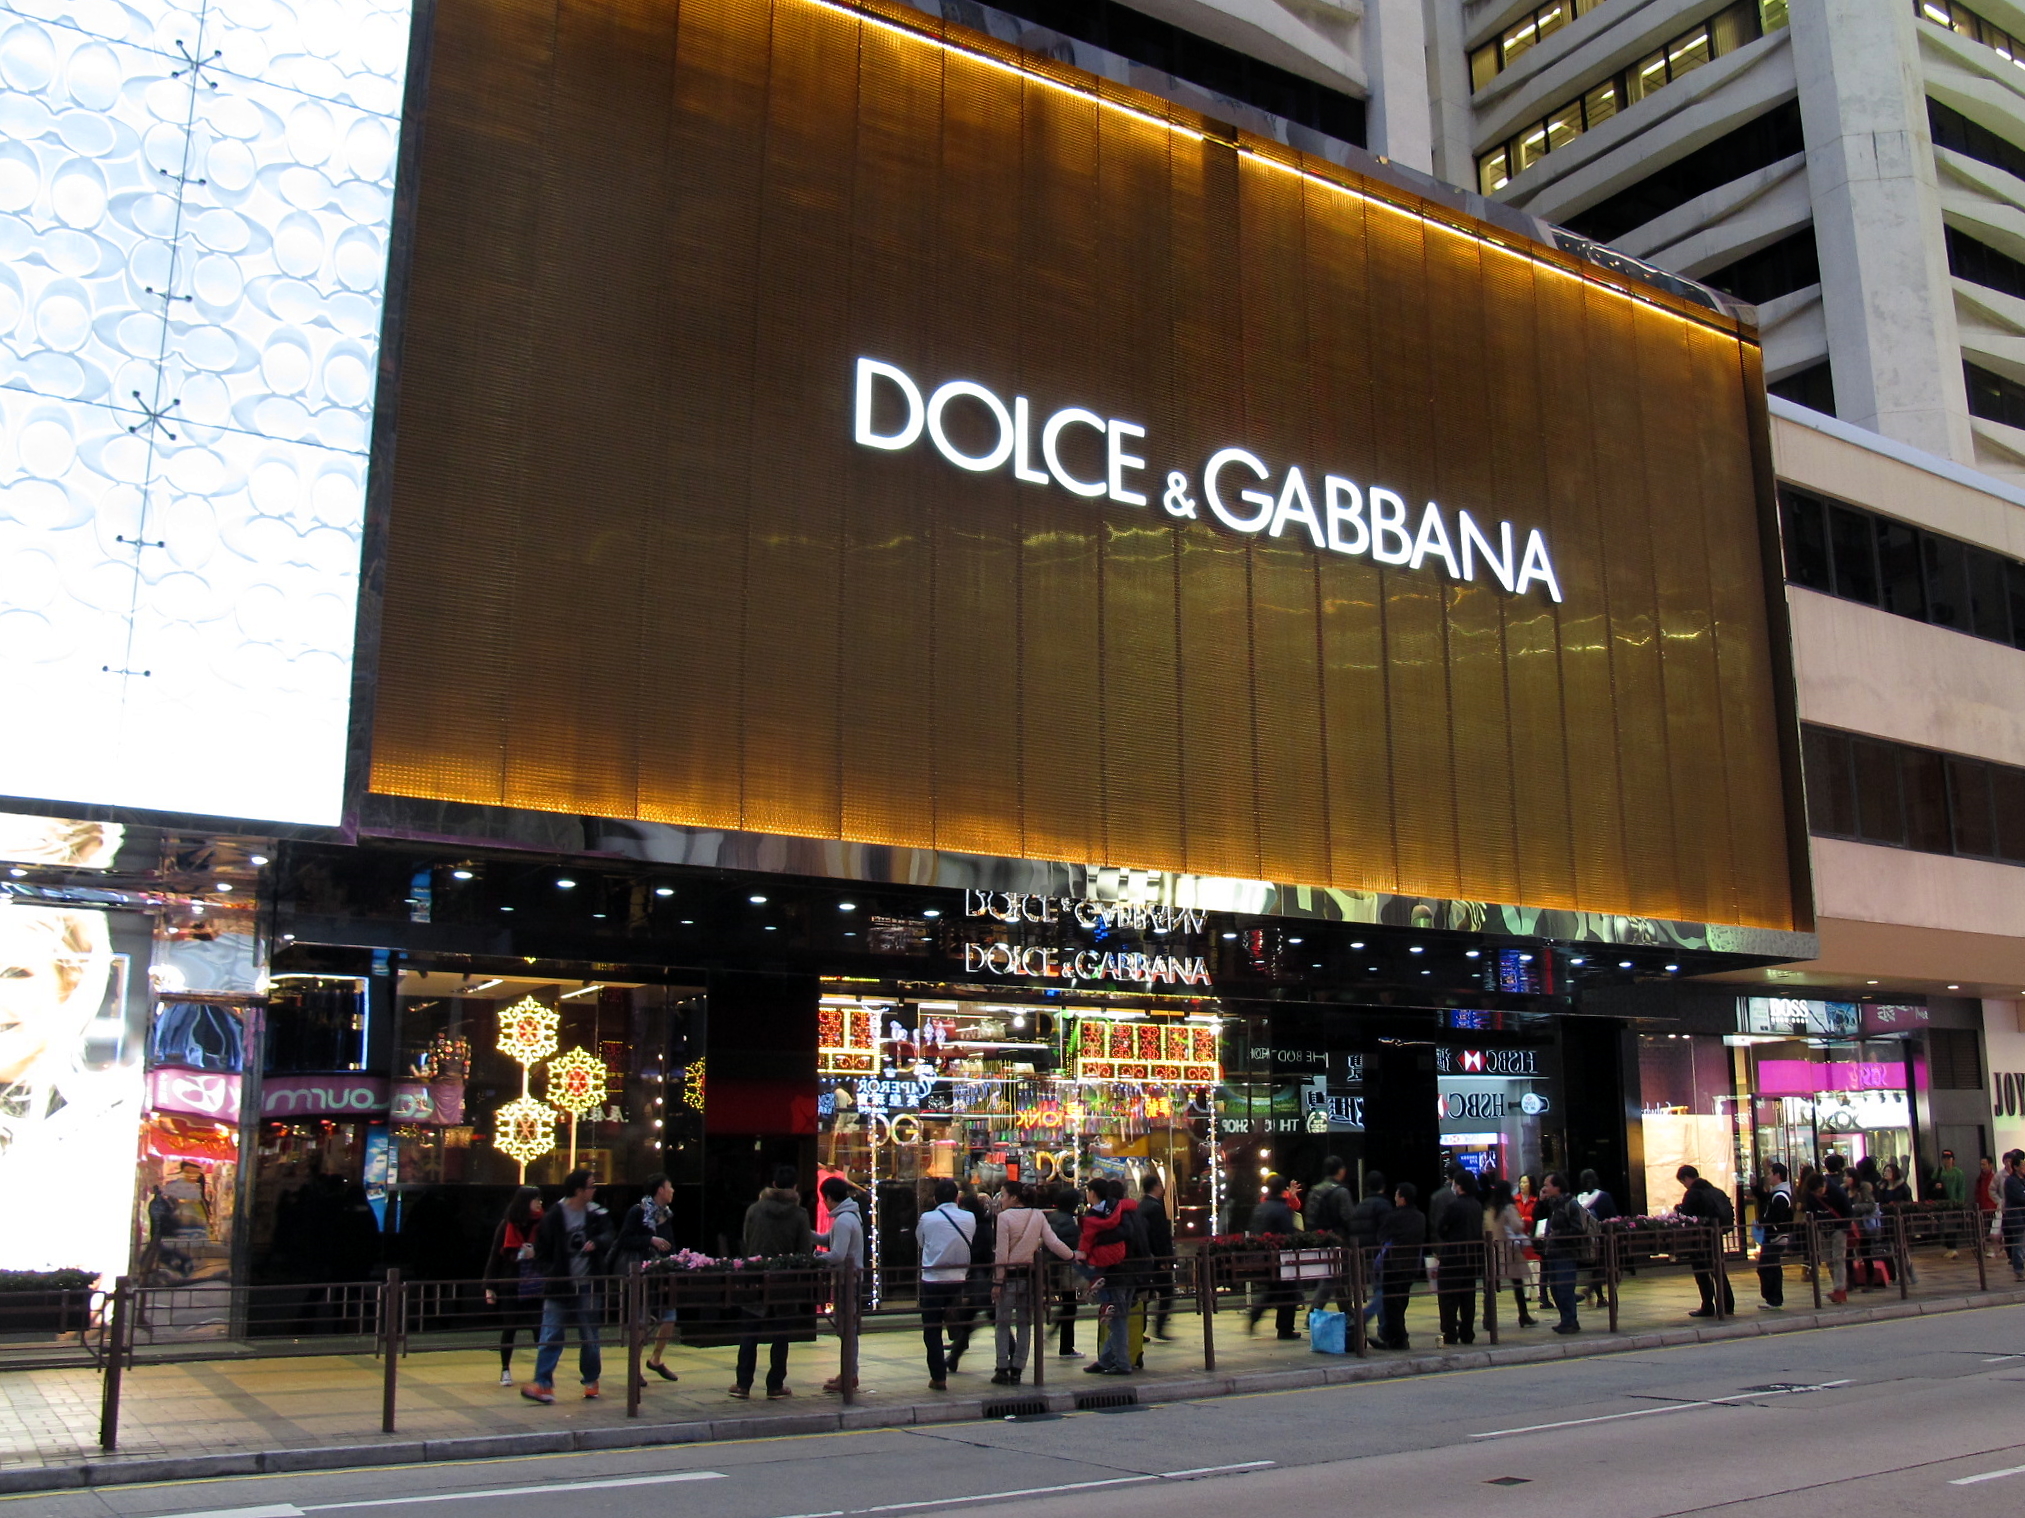 Dolce & Gabbana – wizerunek kobiety według włoskiego duetu